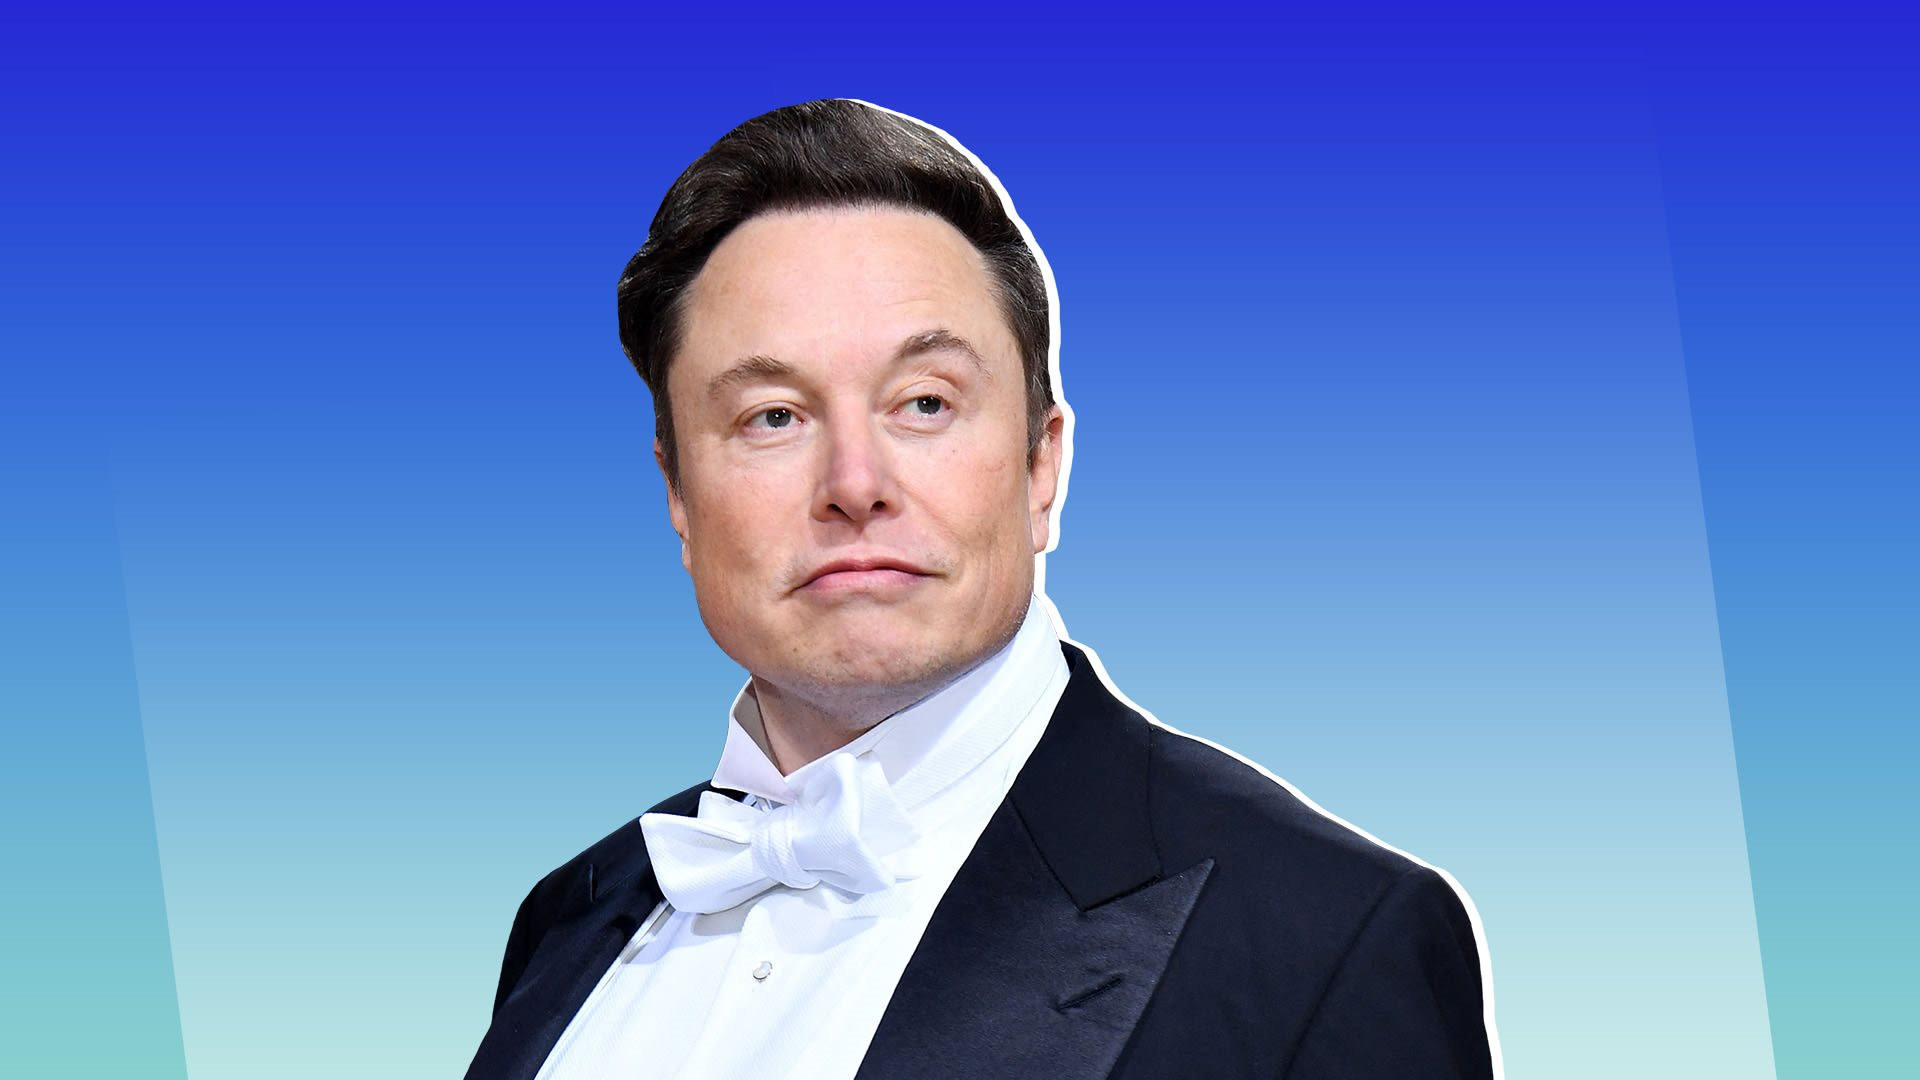 Elon Musk từ chối dự Diễn đàn Kinh tế Thế giới vì ‘nhàm chán’, ban tổ chức lên tiếng: ‘Ông ấy không được mời từ năm 2015’ - Ảnh 2.